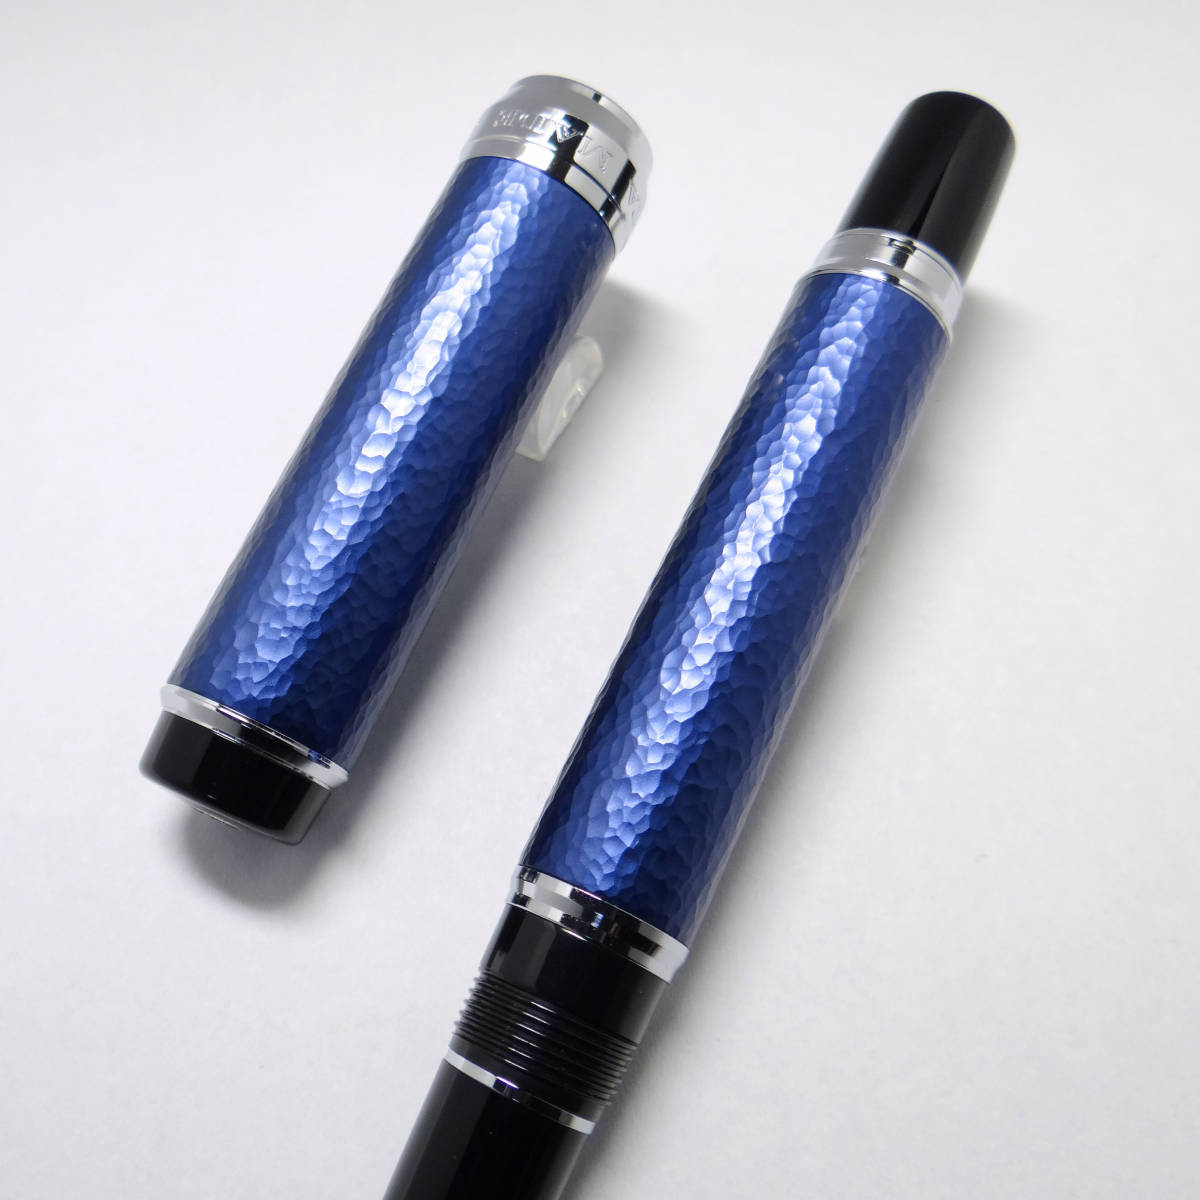 【工芸品】セーラー 大分メイド 天然藍 アルミ削出 槌目 万年筆 SAILOR JAPAN BLUE Oita Made Indigo dye AluminumTsuchime Fountain Pen_画像5